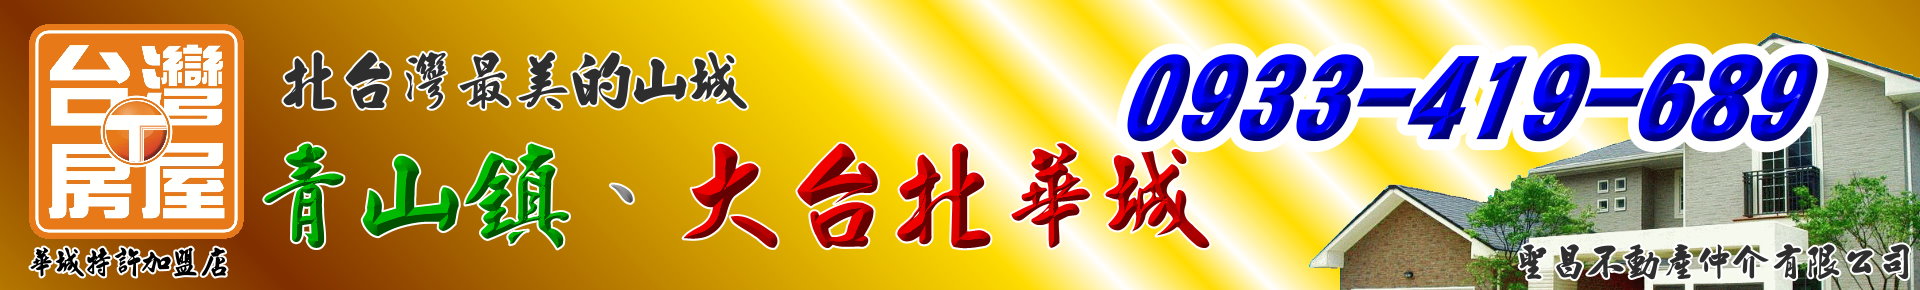 照片房屋1-【白健芬】一次委託~終身信賴(大台北華城/青山鎮) logo